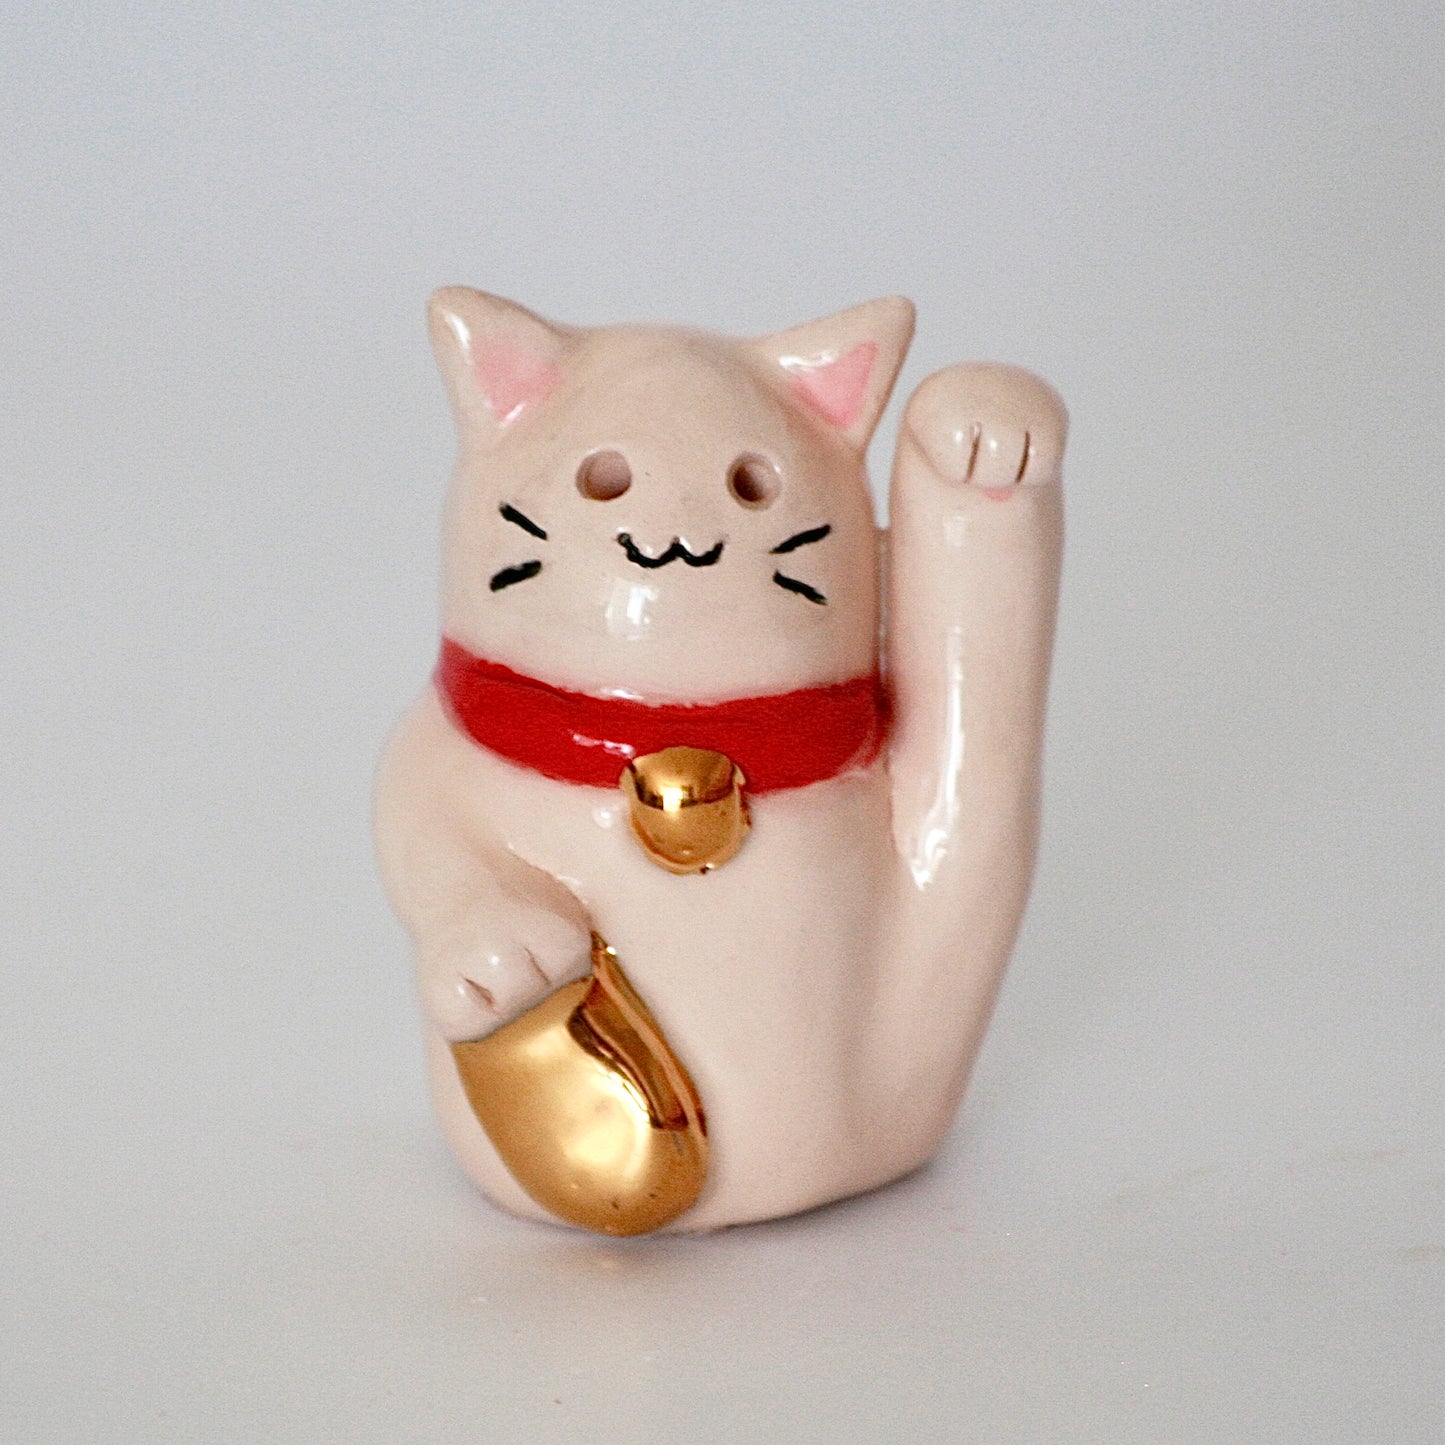 Maneki Neko: The Lucky Kitty